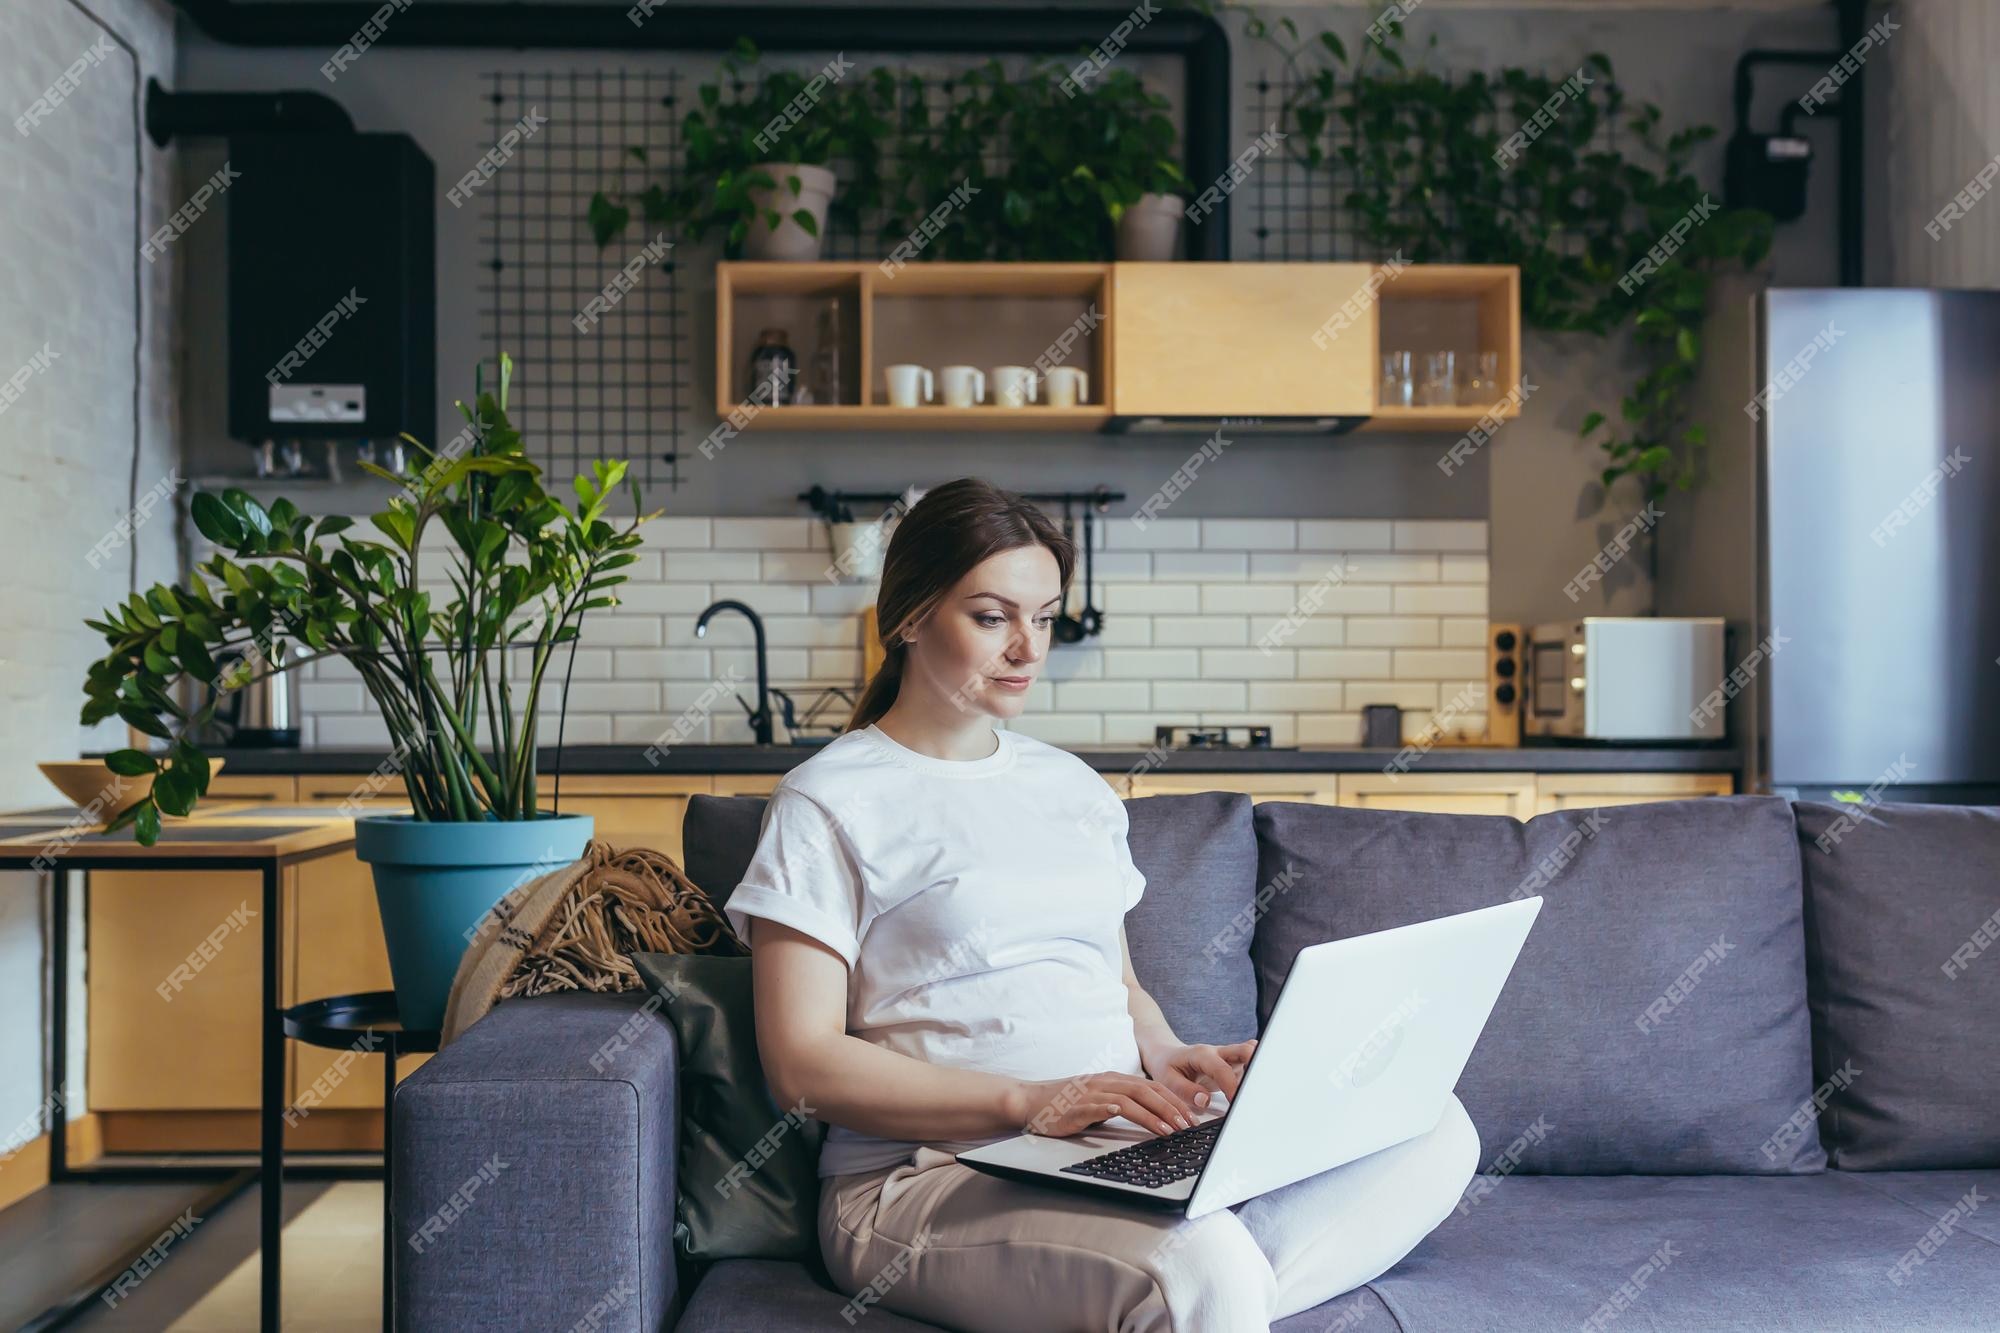 Maria Panter Bemiddelaar Zwangerschapsverlof zwangere mooie vrouw zittend op de bank thuis met  laptop in huiskleding babyartikelen online bestellen kiezen voor het kopen  van kleding en speelgoed voor baby | Premium Foto